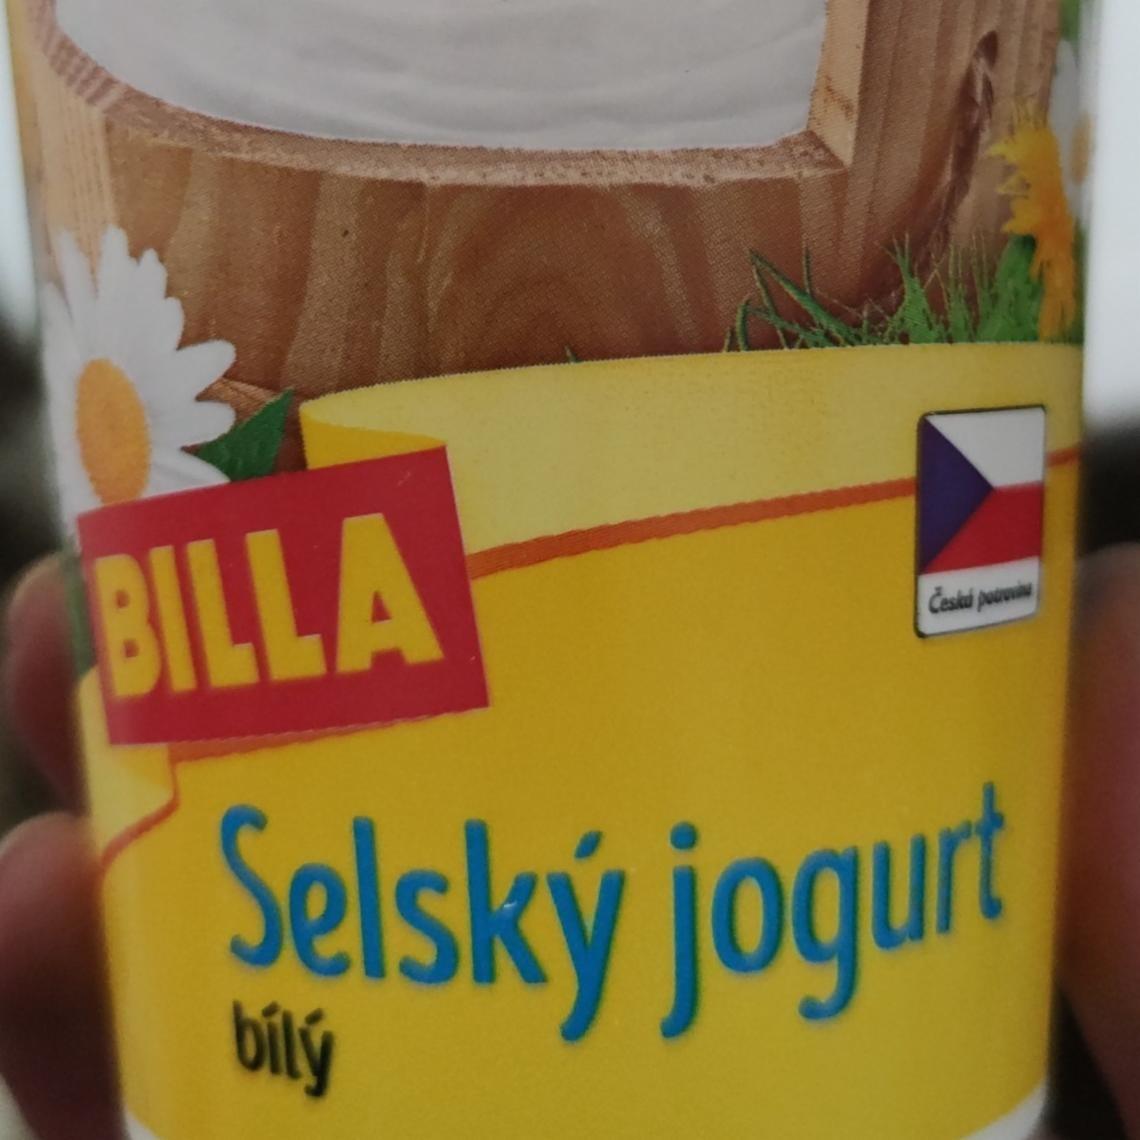 Fotografie - Selský jogurt bílý Billa